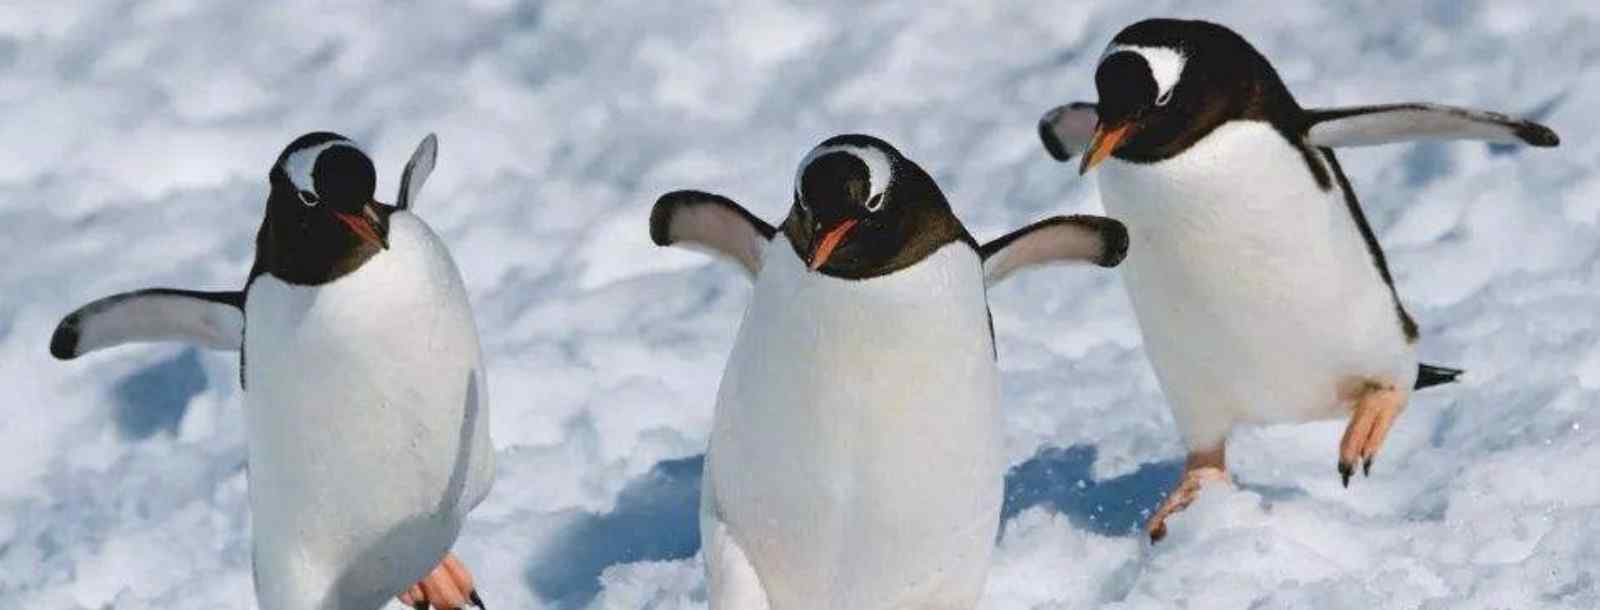 企鹅生活在南极还是生活在北极